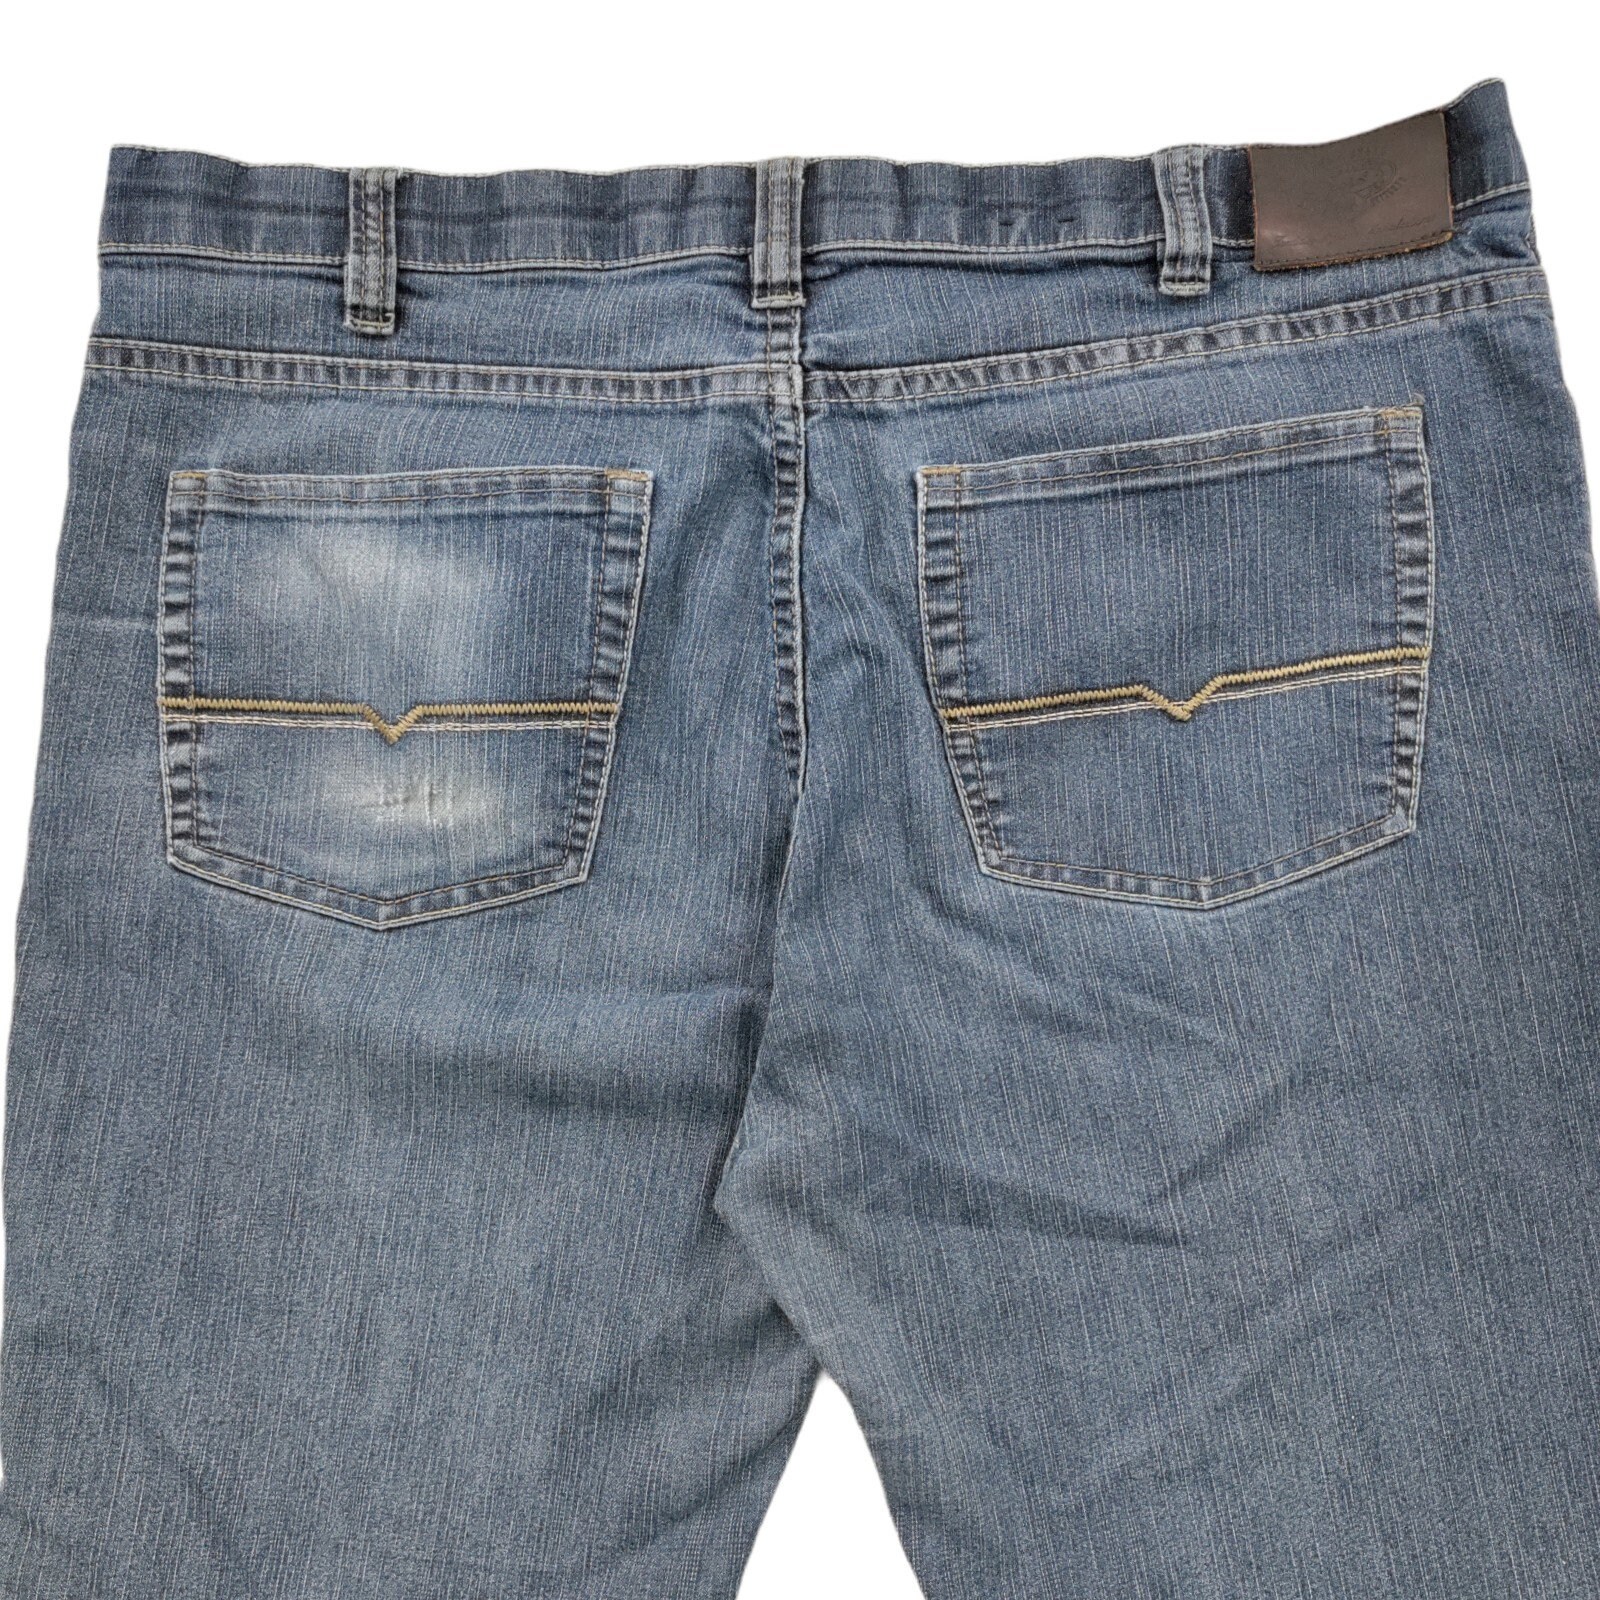 Lois Jeans Men Size 38 Jeans Medium Wash Blue Extensible | Etsy